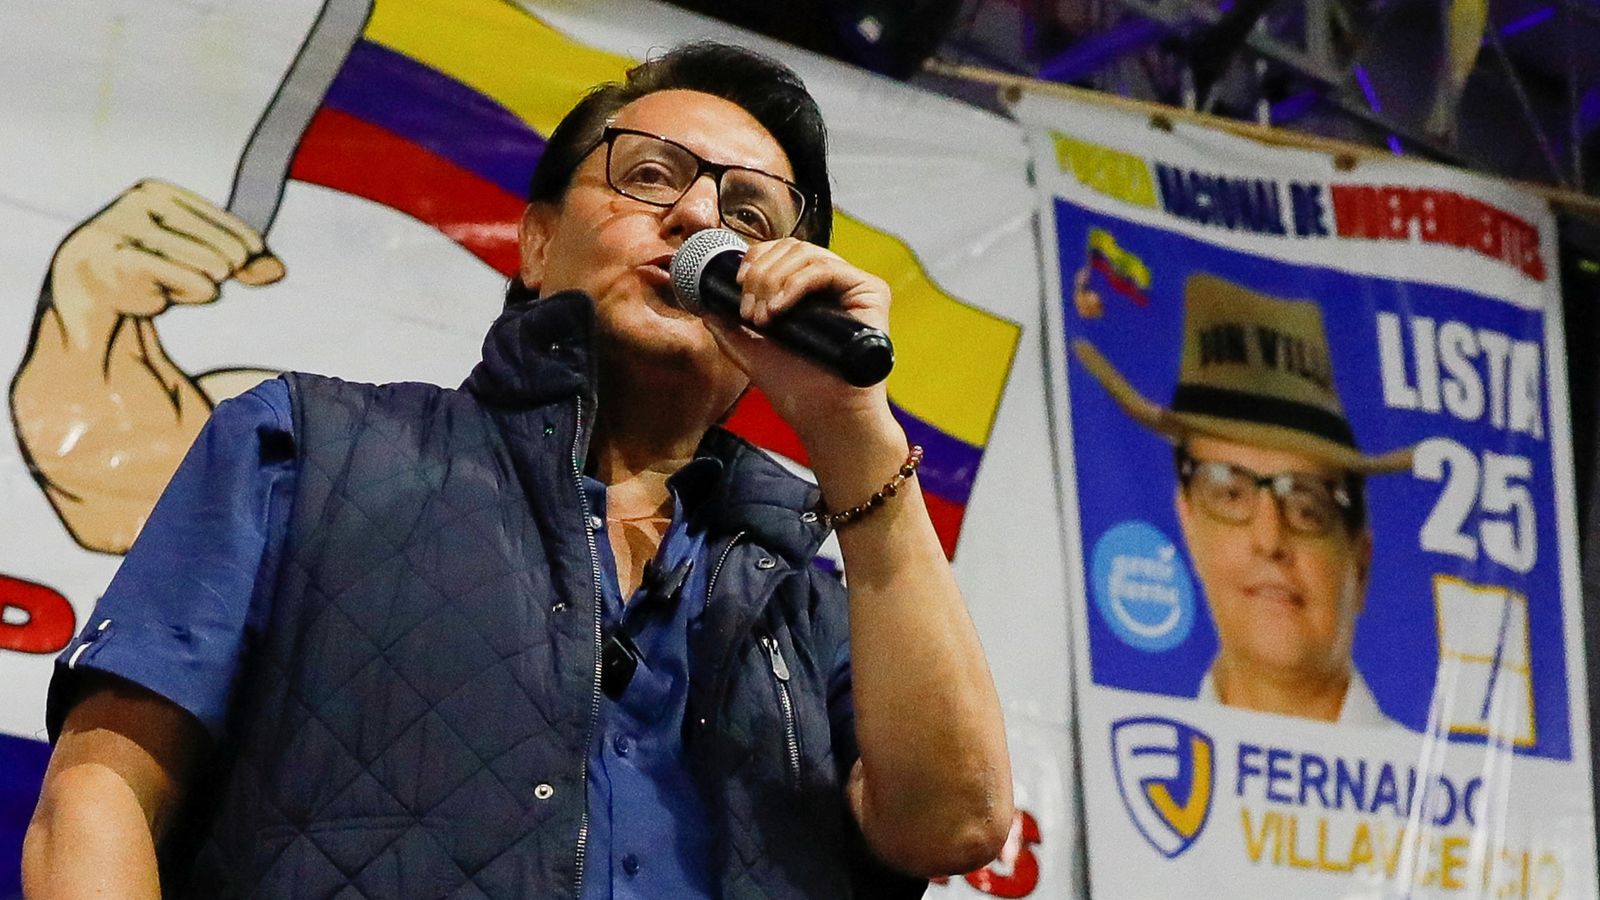 Ecuadorian presidential candidate Fernando Villavicencio shot dead at political rally